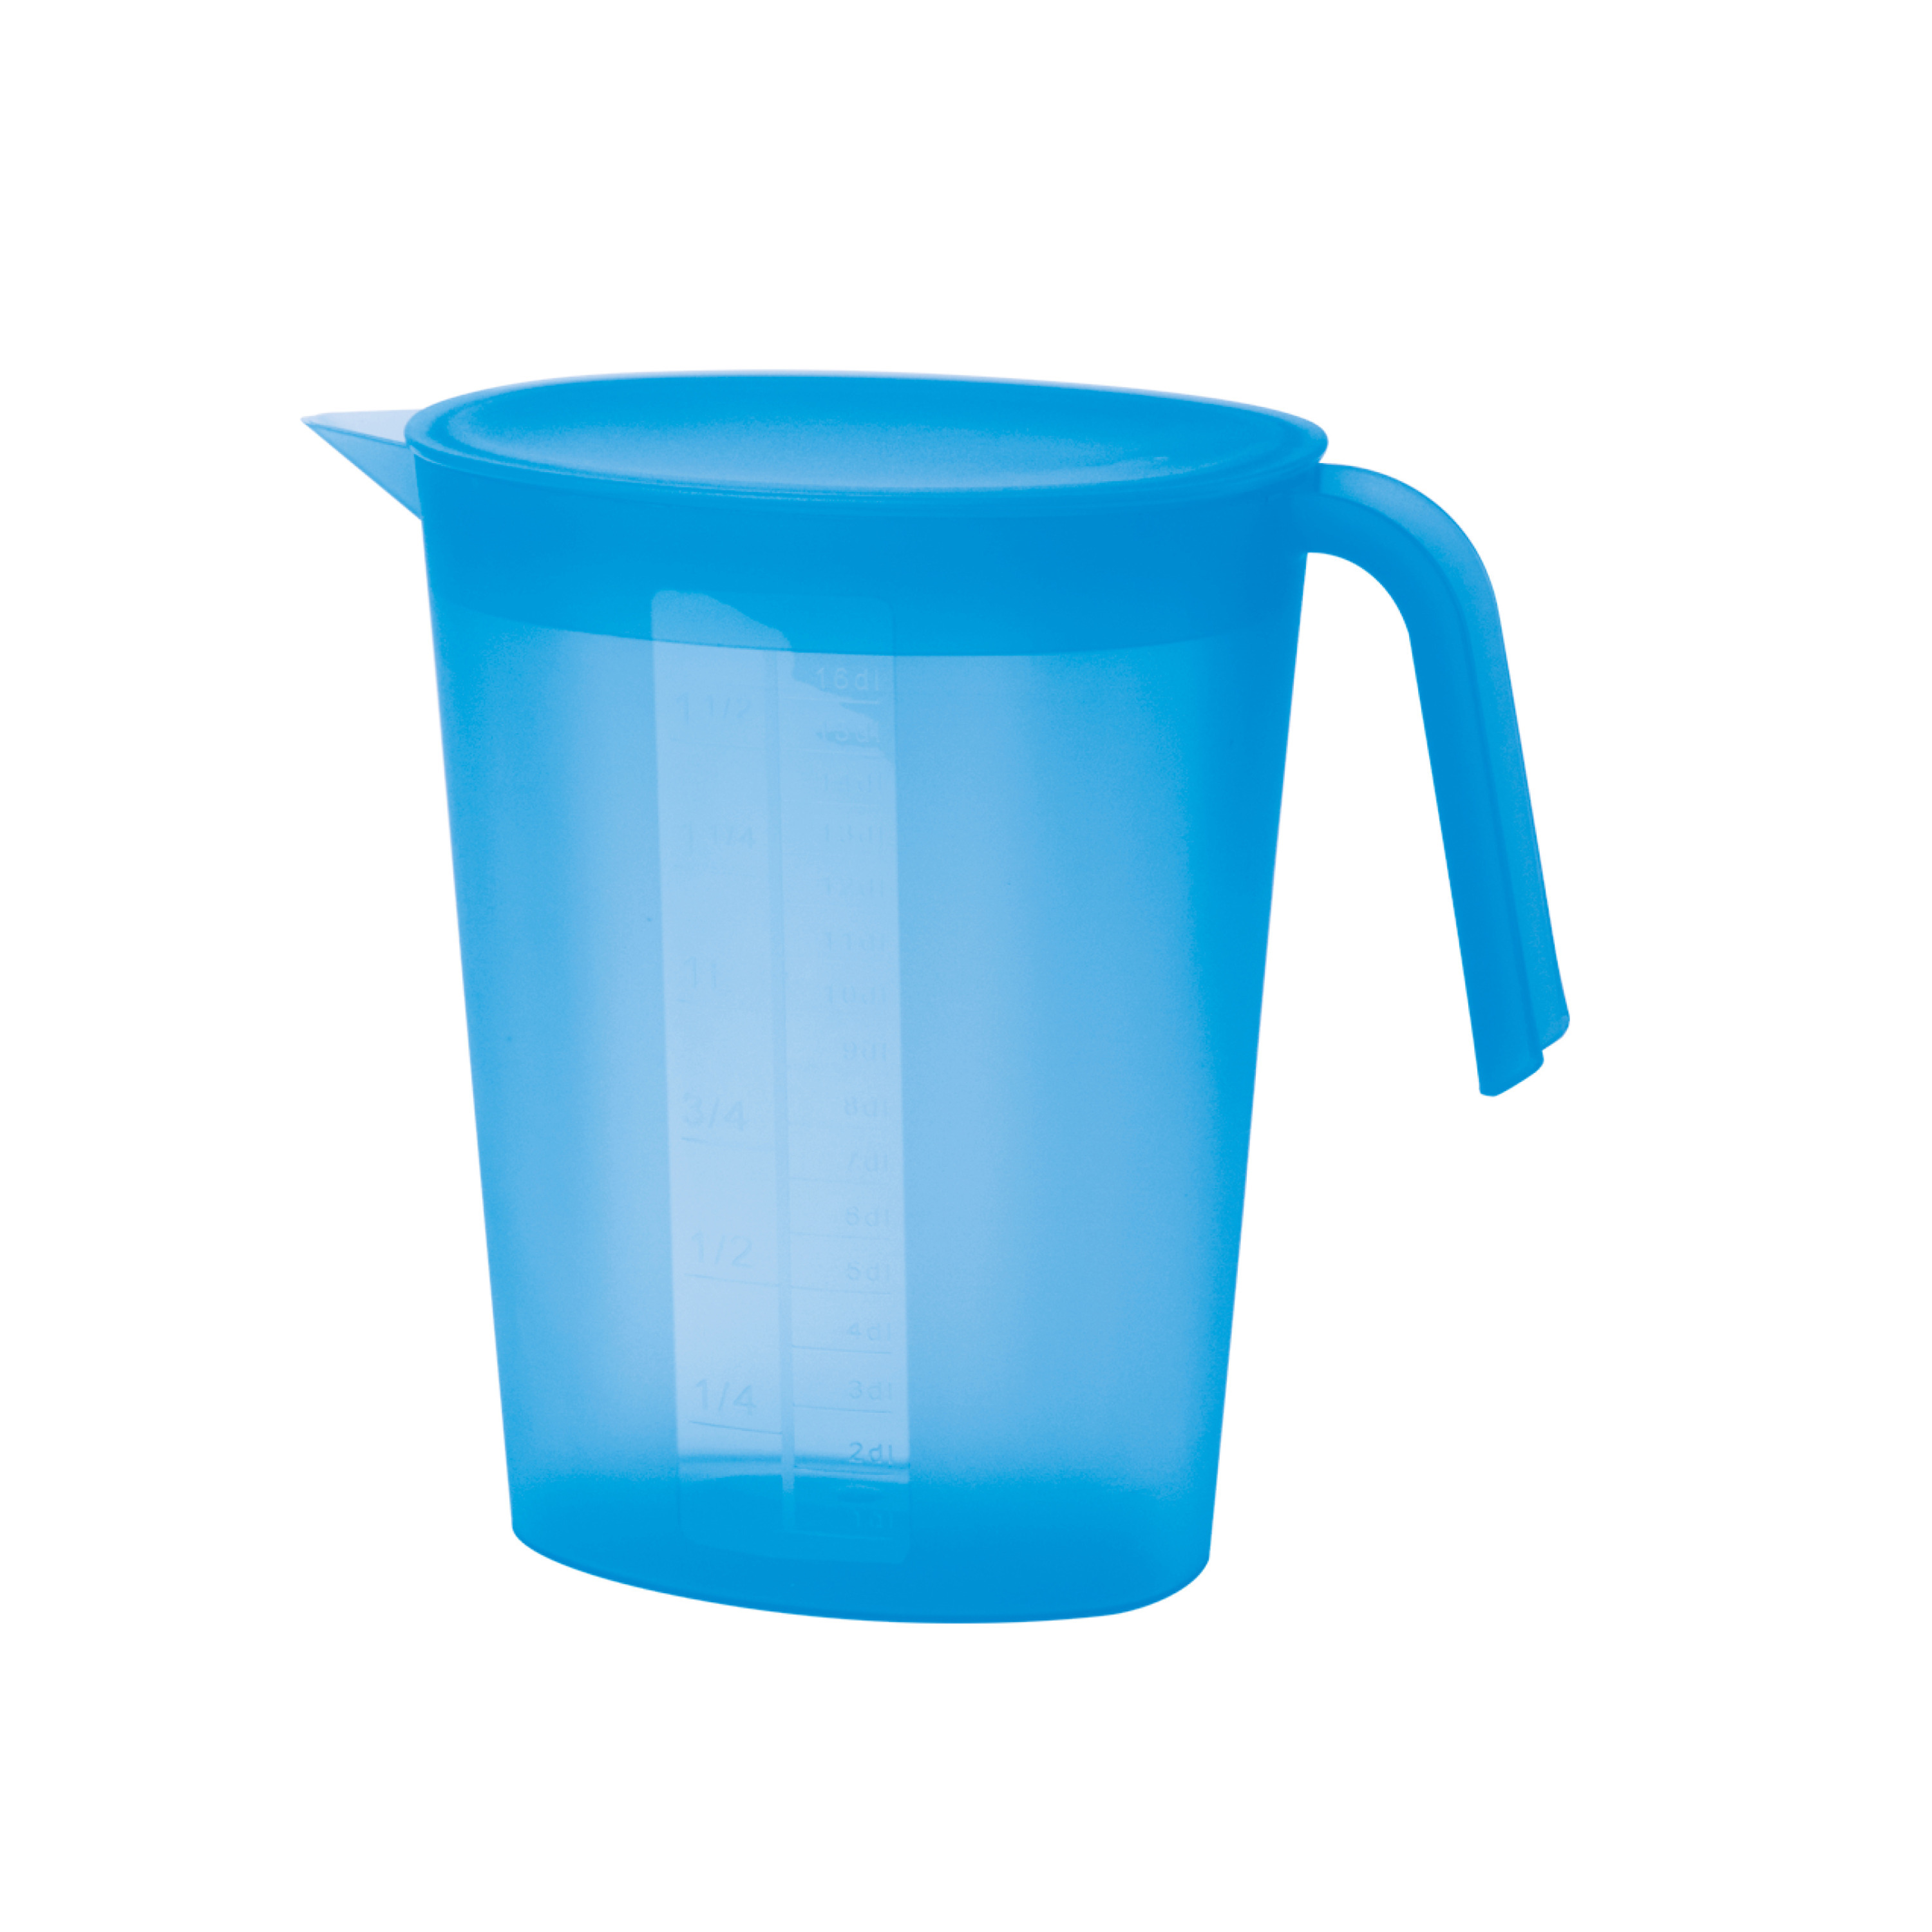 Juypal Hogar Schenkkan/waterkan met deksel - blauw - 1,75 liter - kunststof - L22 x H20 cm -